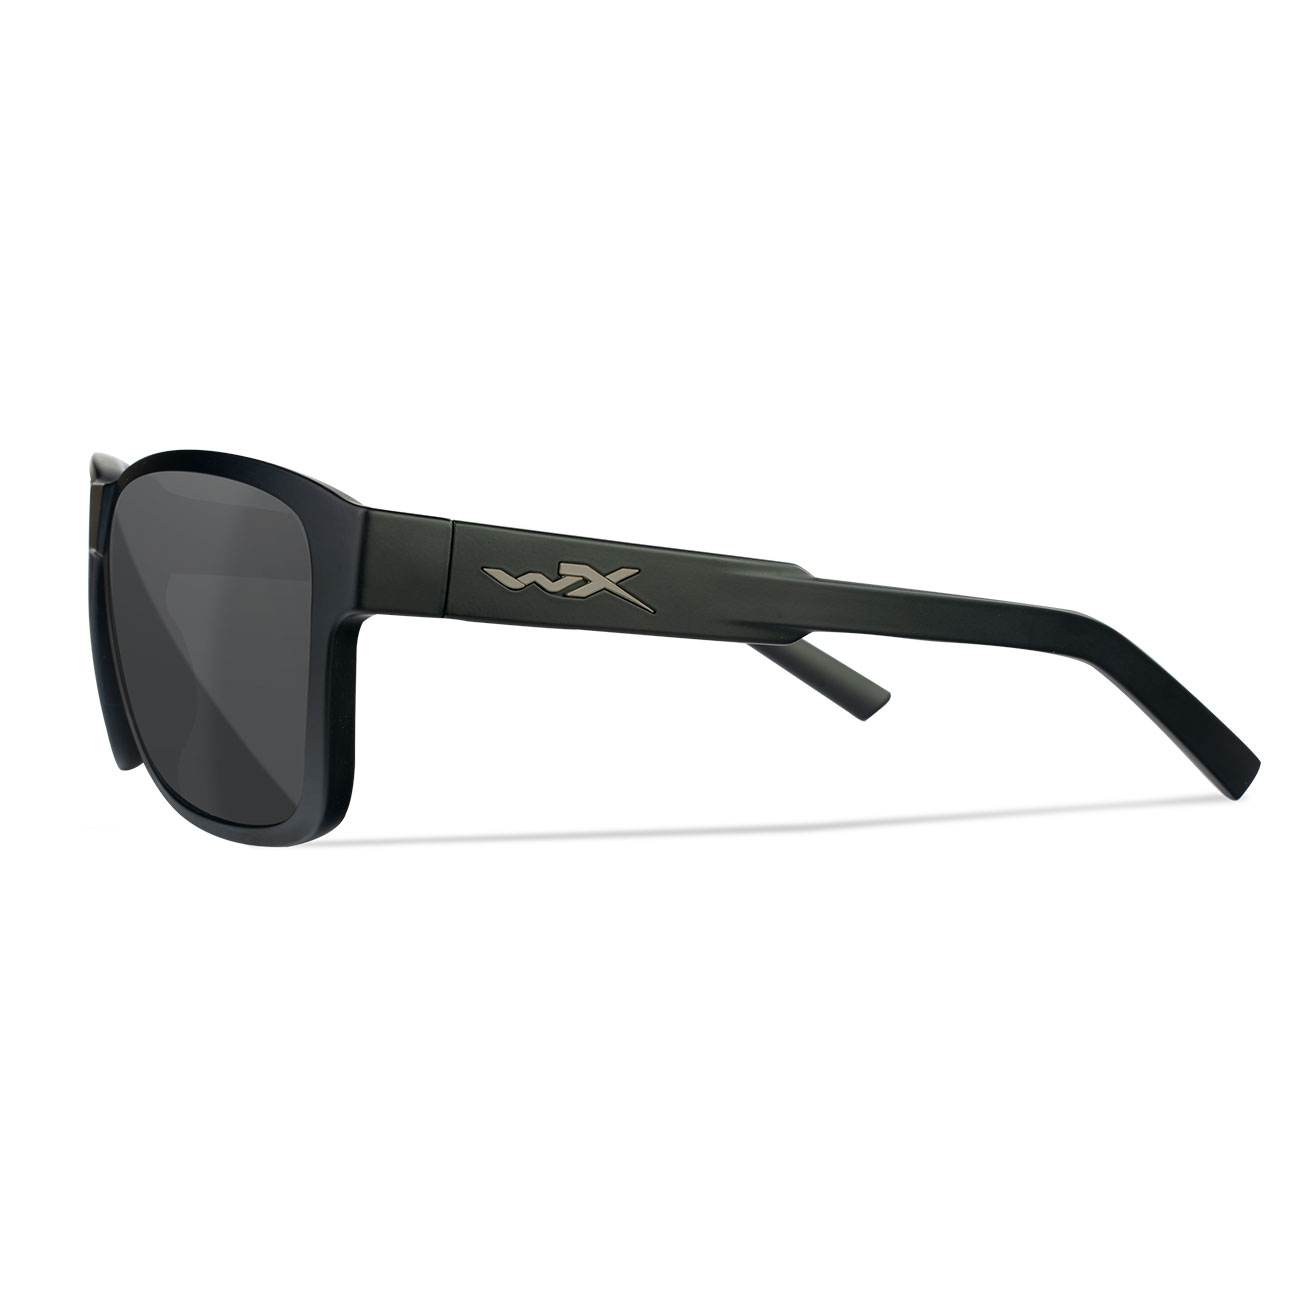 Wiley X Sonnenbrille Trek matt schwarz Glser grau inkl. Brillenetui und Seitenschutz Bild 2